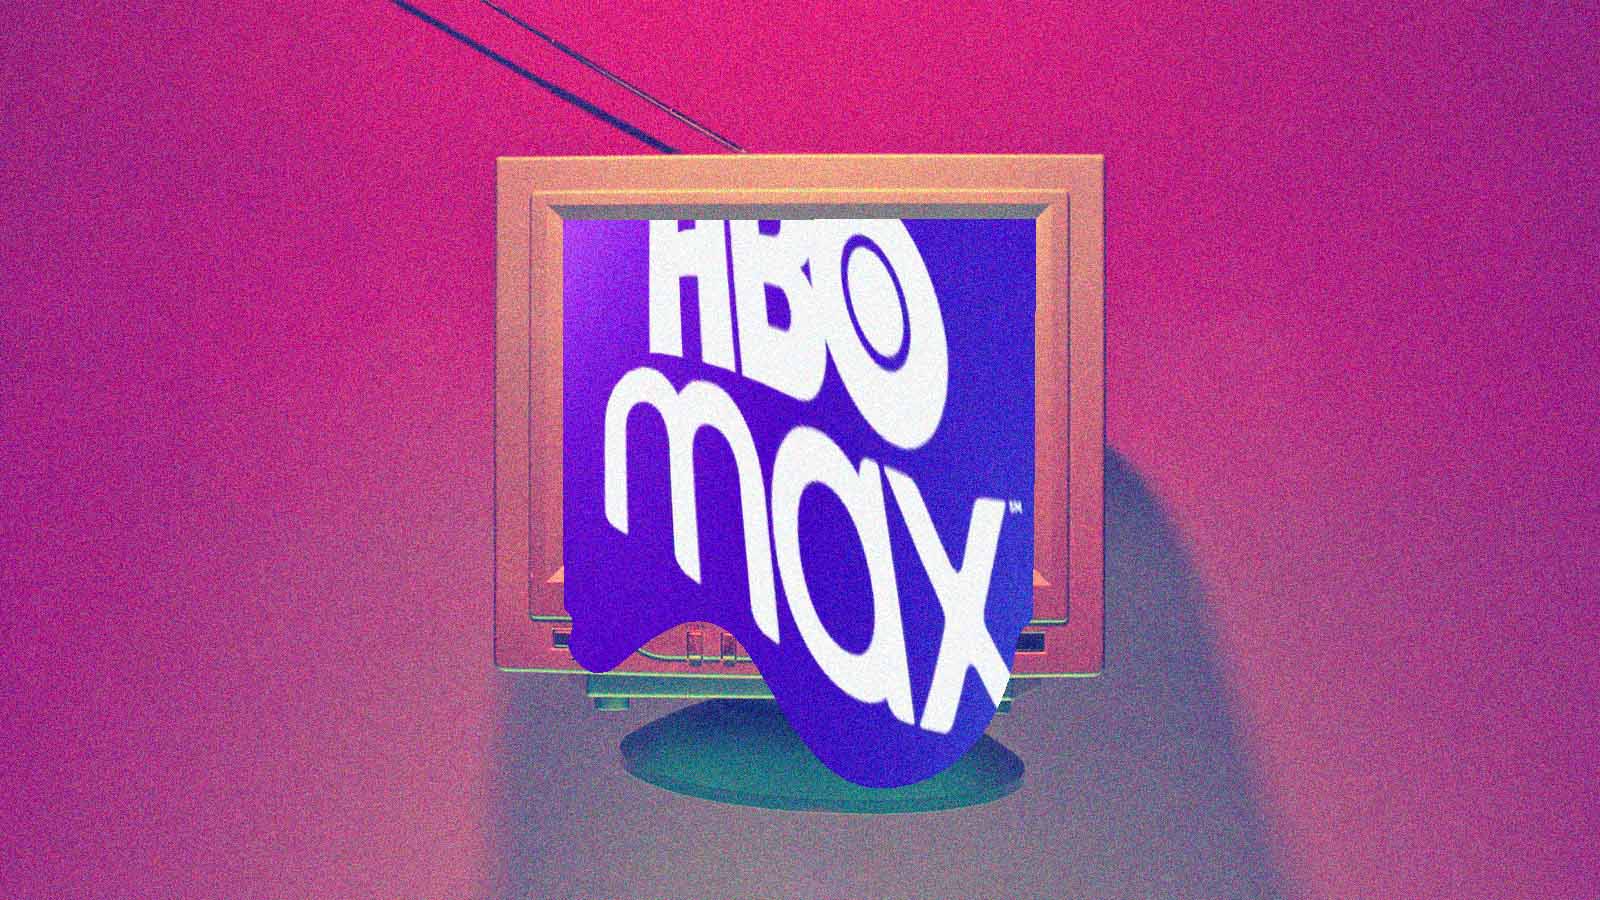 HBO Max: 10 bons filmes e séries que você não pode terminar 2023 sem  assistir